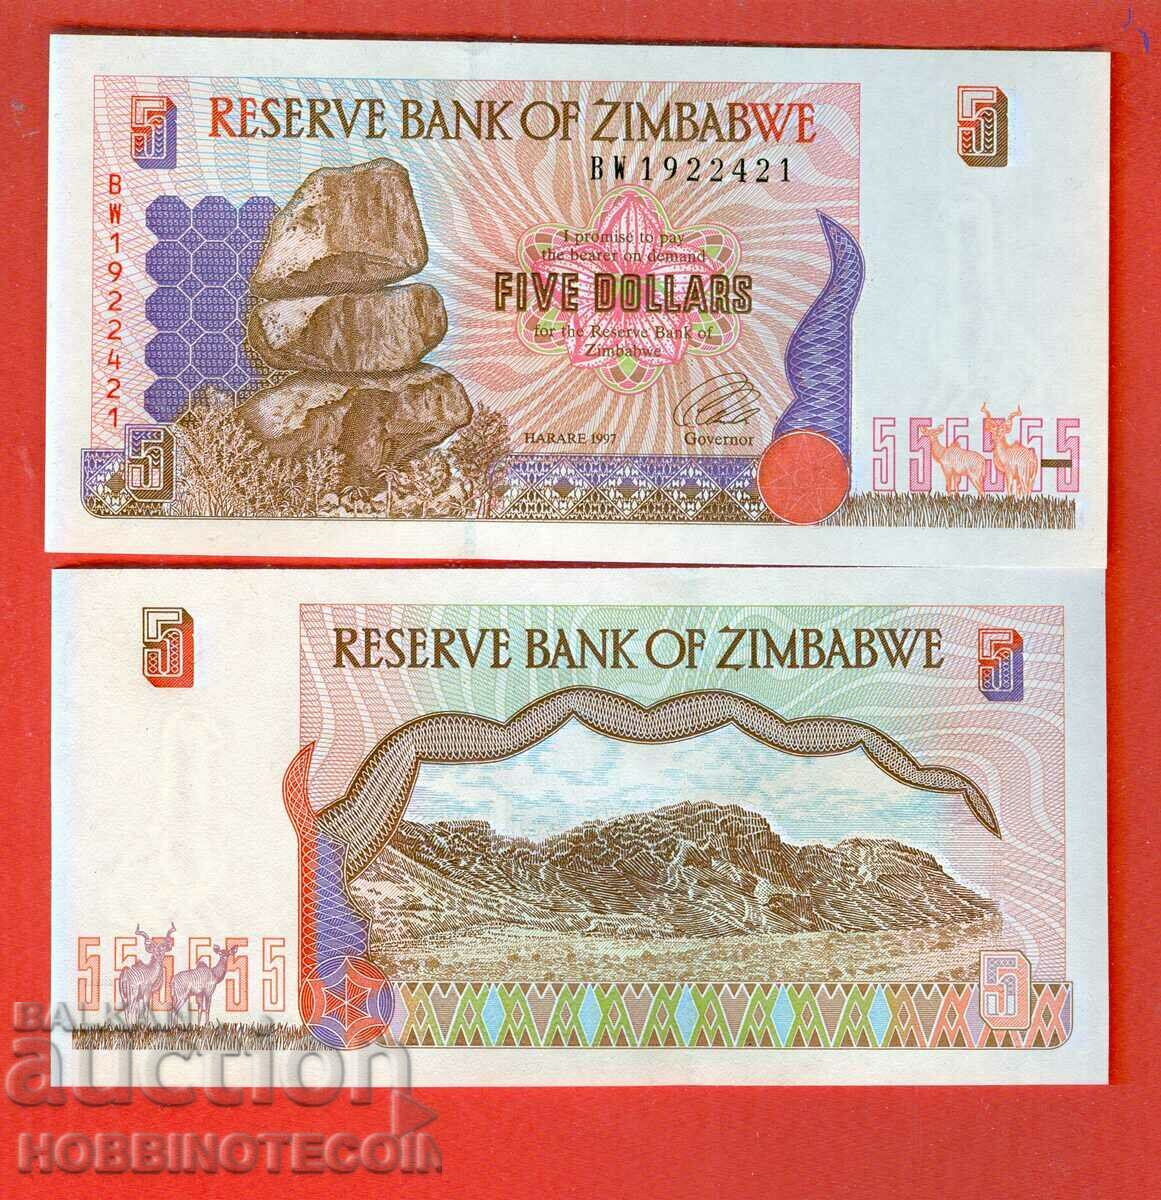 ZIMBABWE ZIMBABWE emisiune de 5 USD - emisiune 1997 NOU UNC